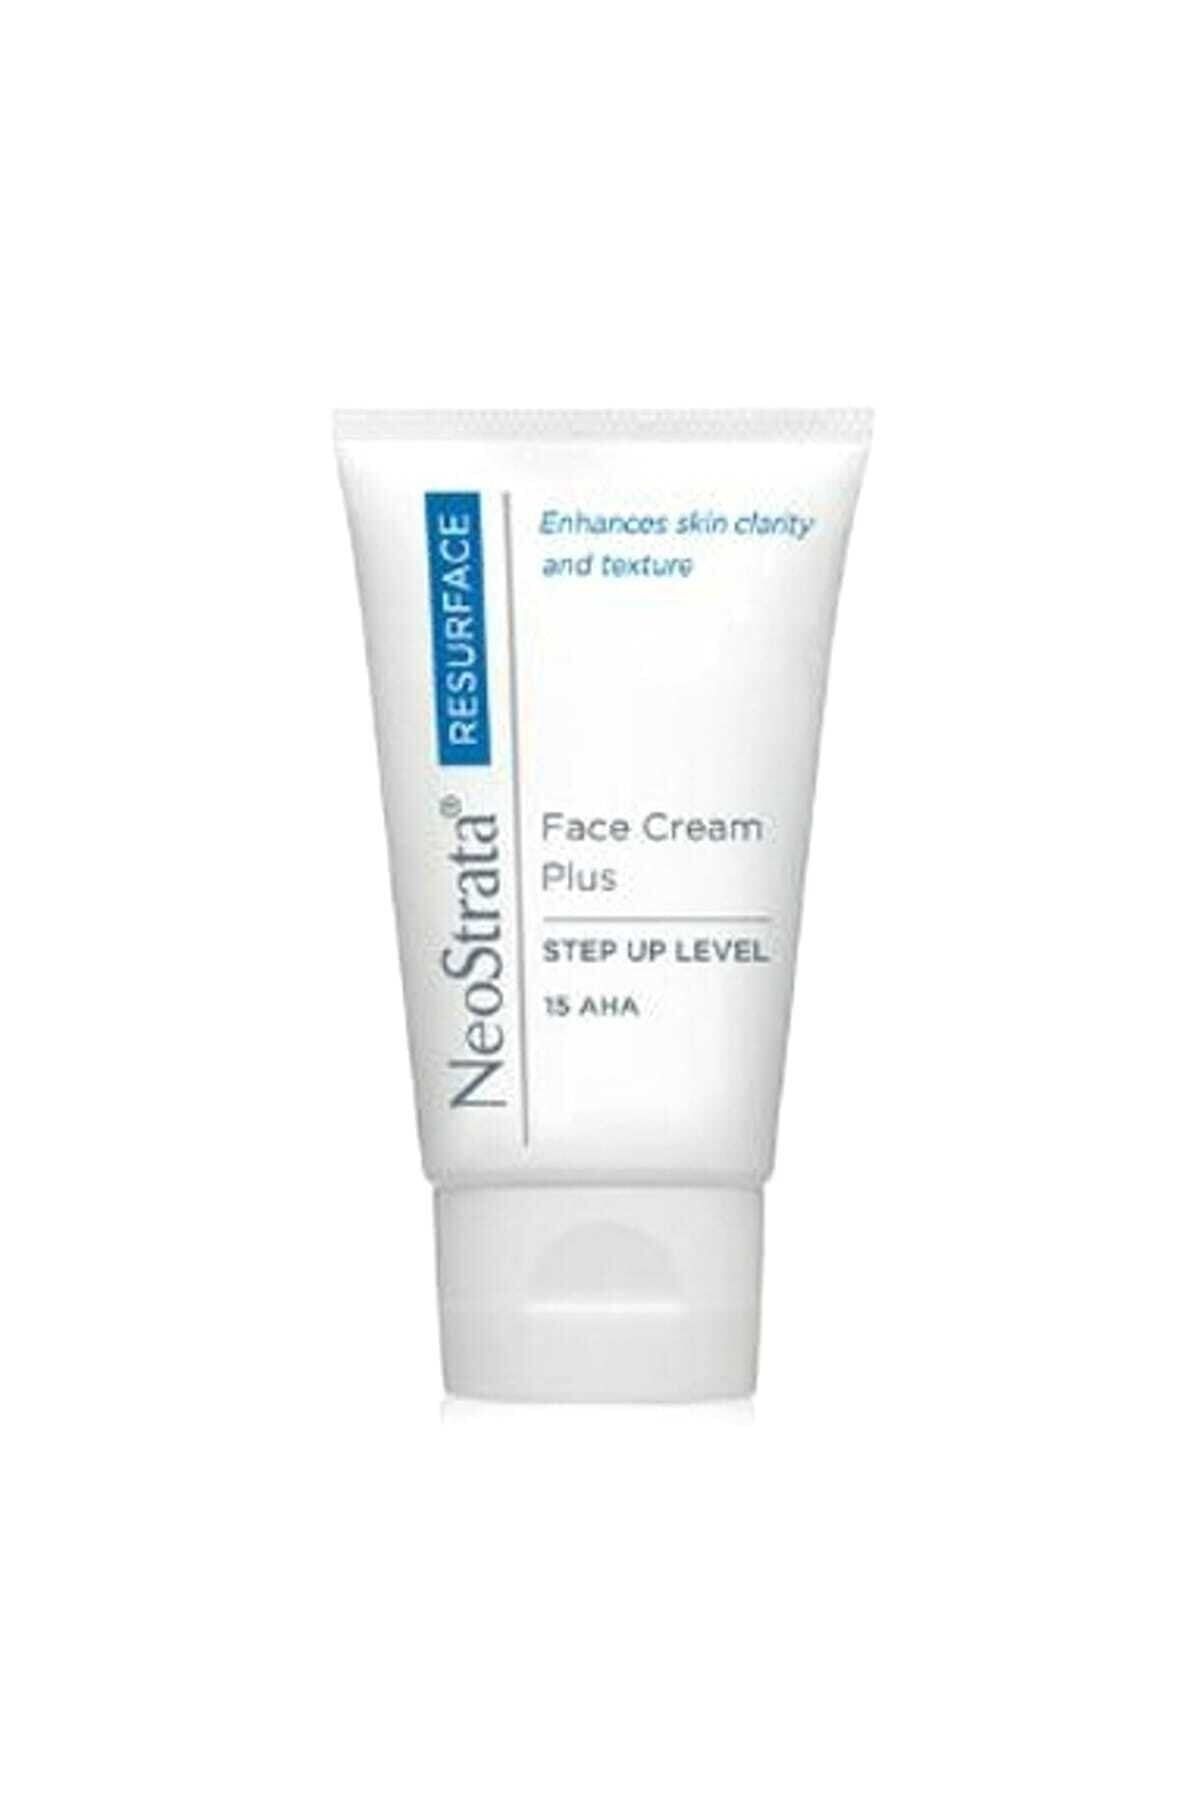 NeoStrata Normal Ciltler Için Gündüz Kremi - Face Cream Plus 40 G 732013082017